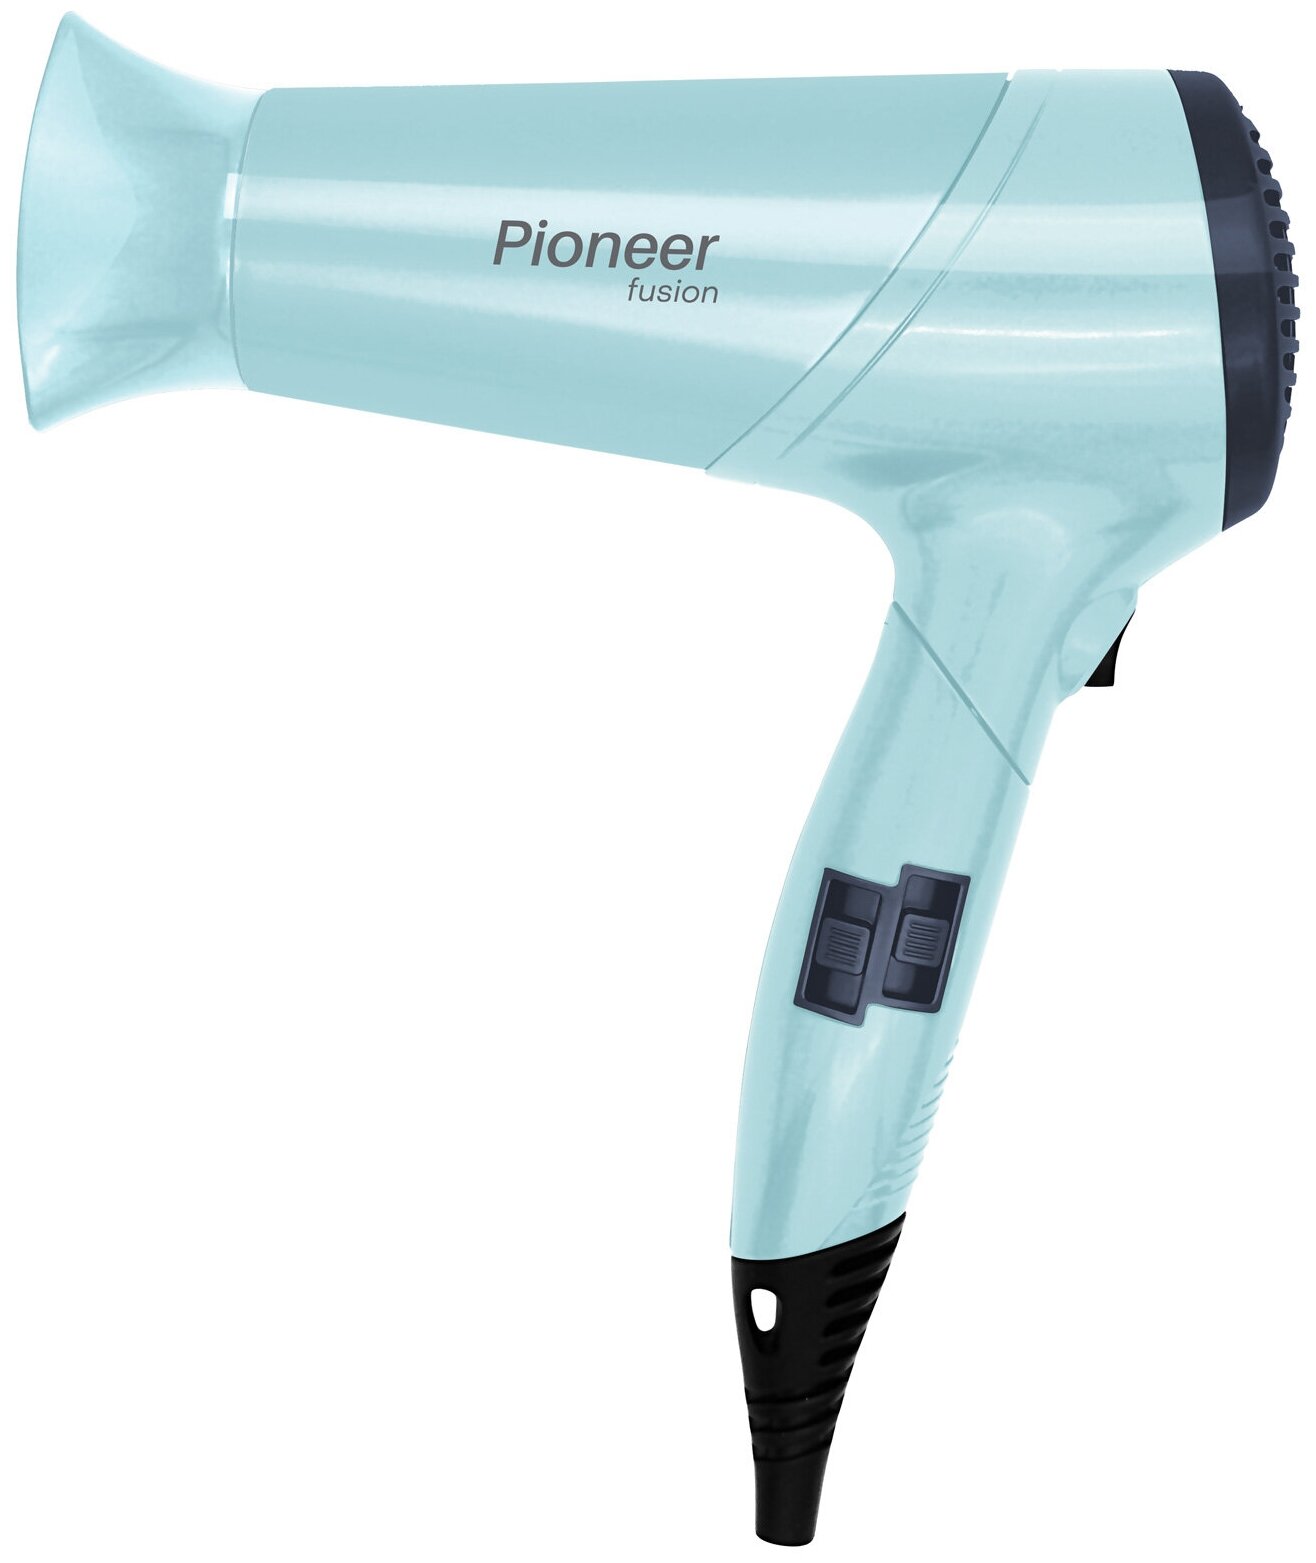 Фен для волос Pioneer HD-2001DC со складной ручкой и насадкой-концентратором, 2 скорости, 3 температурных режима, 2000 Вт, бирюзовый, светло-синий